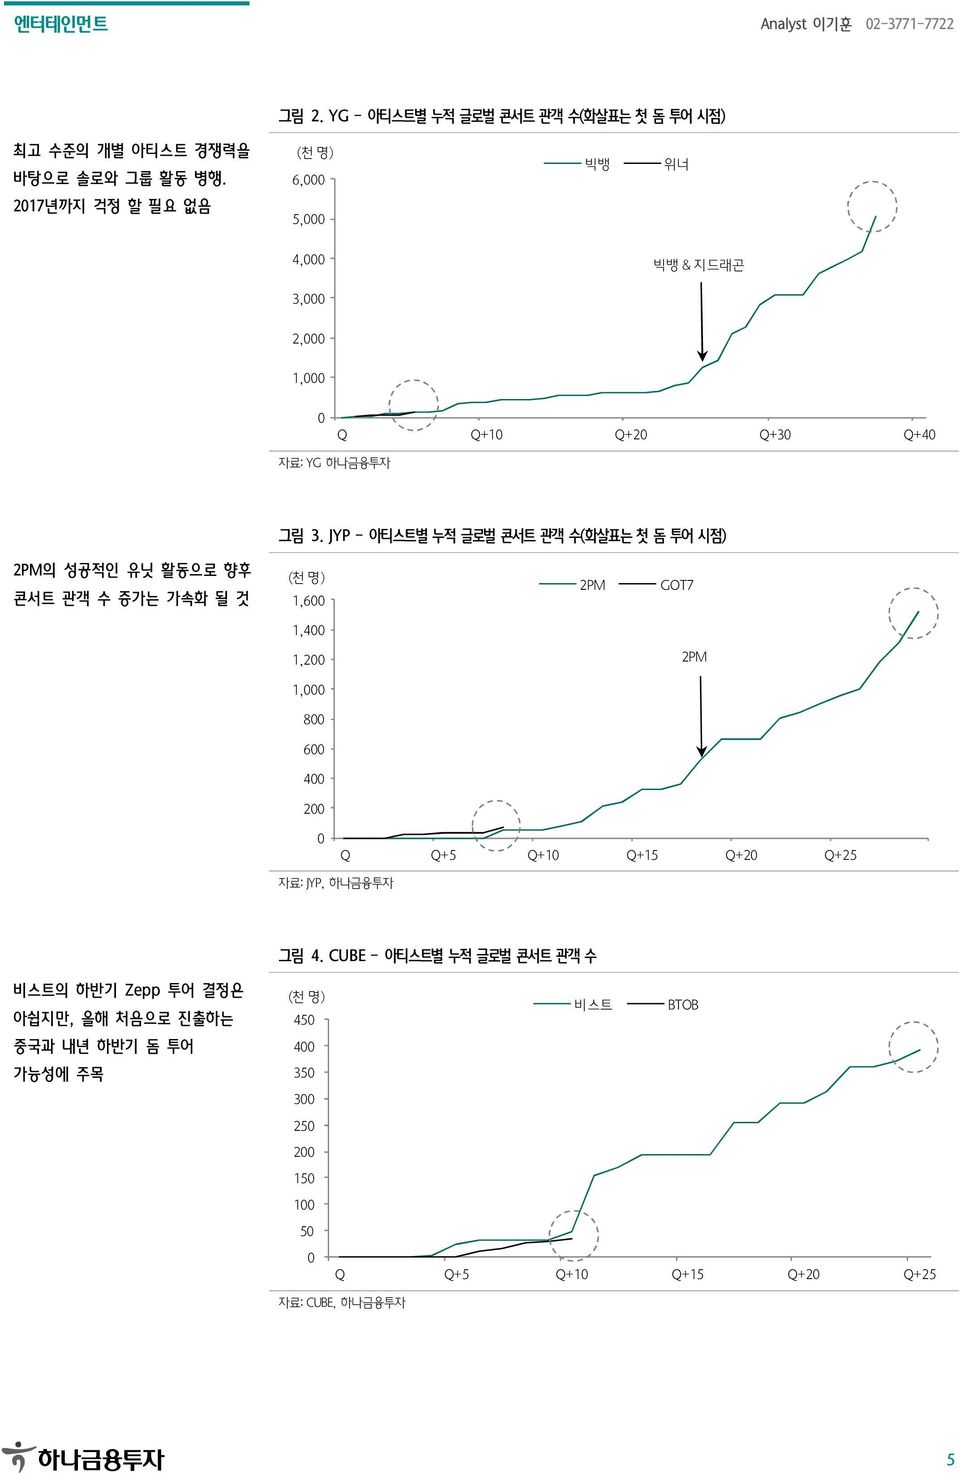 JYP - 아티스트별 누적 글로벌 콘서트 관객 수(화살표는 첫 돔 투어 시점) 2PM의 성공적인 유닛 활동으로 향후 콘서트 관객 수 증가는 가속화 될 것 (천 명) 1,6 2PM GOT7 1,4 1,2 2PM 1, 8 6 4 2 Q